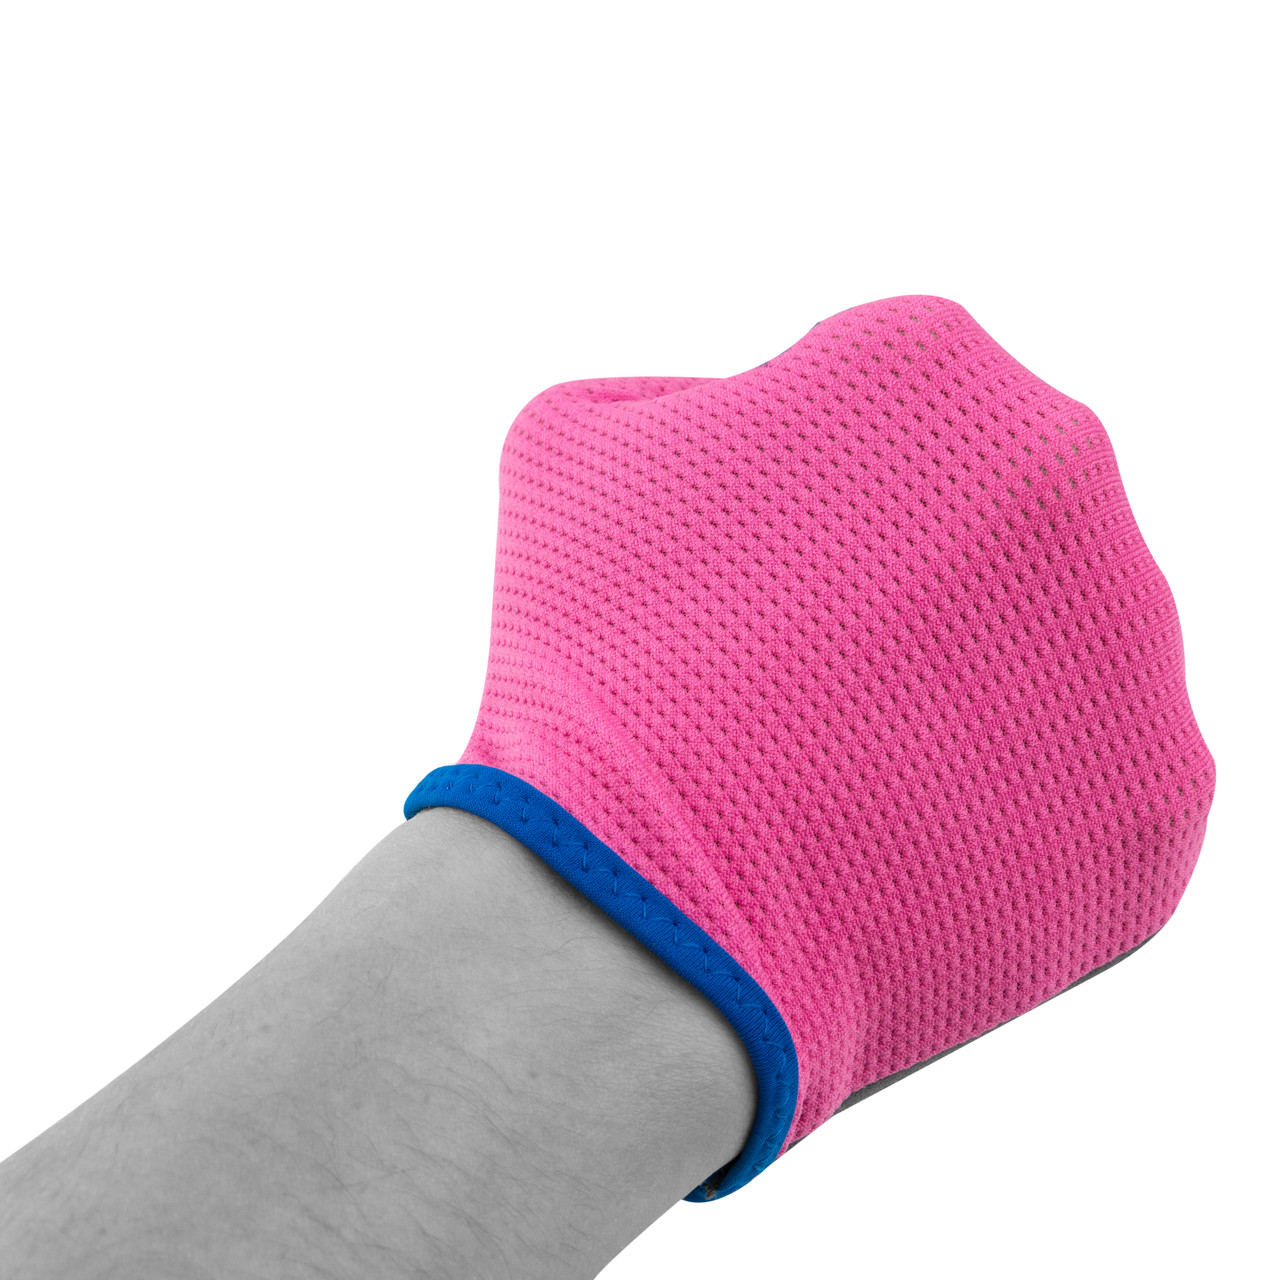 Перчатки для фитнеса PowerPlay 3418 женские розовые XS